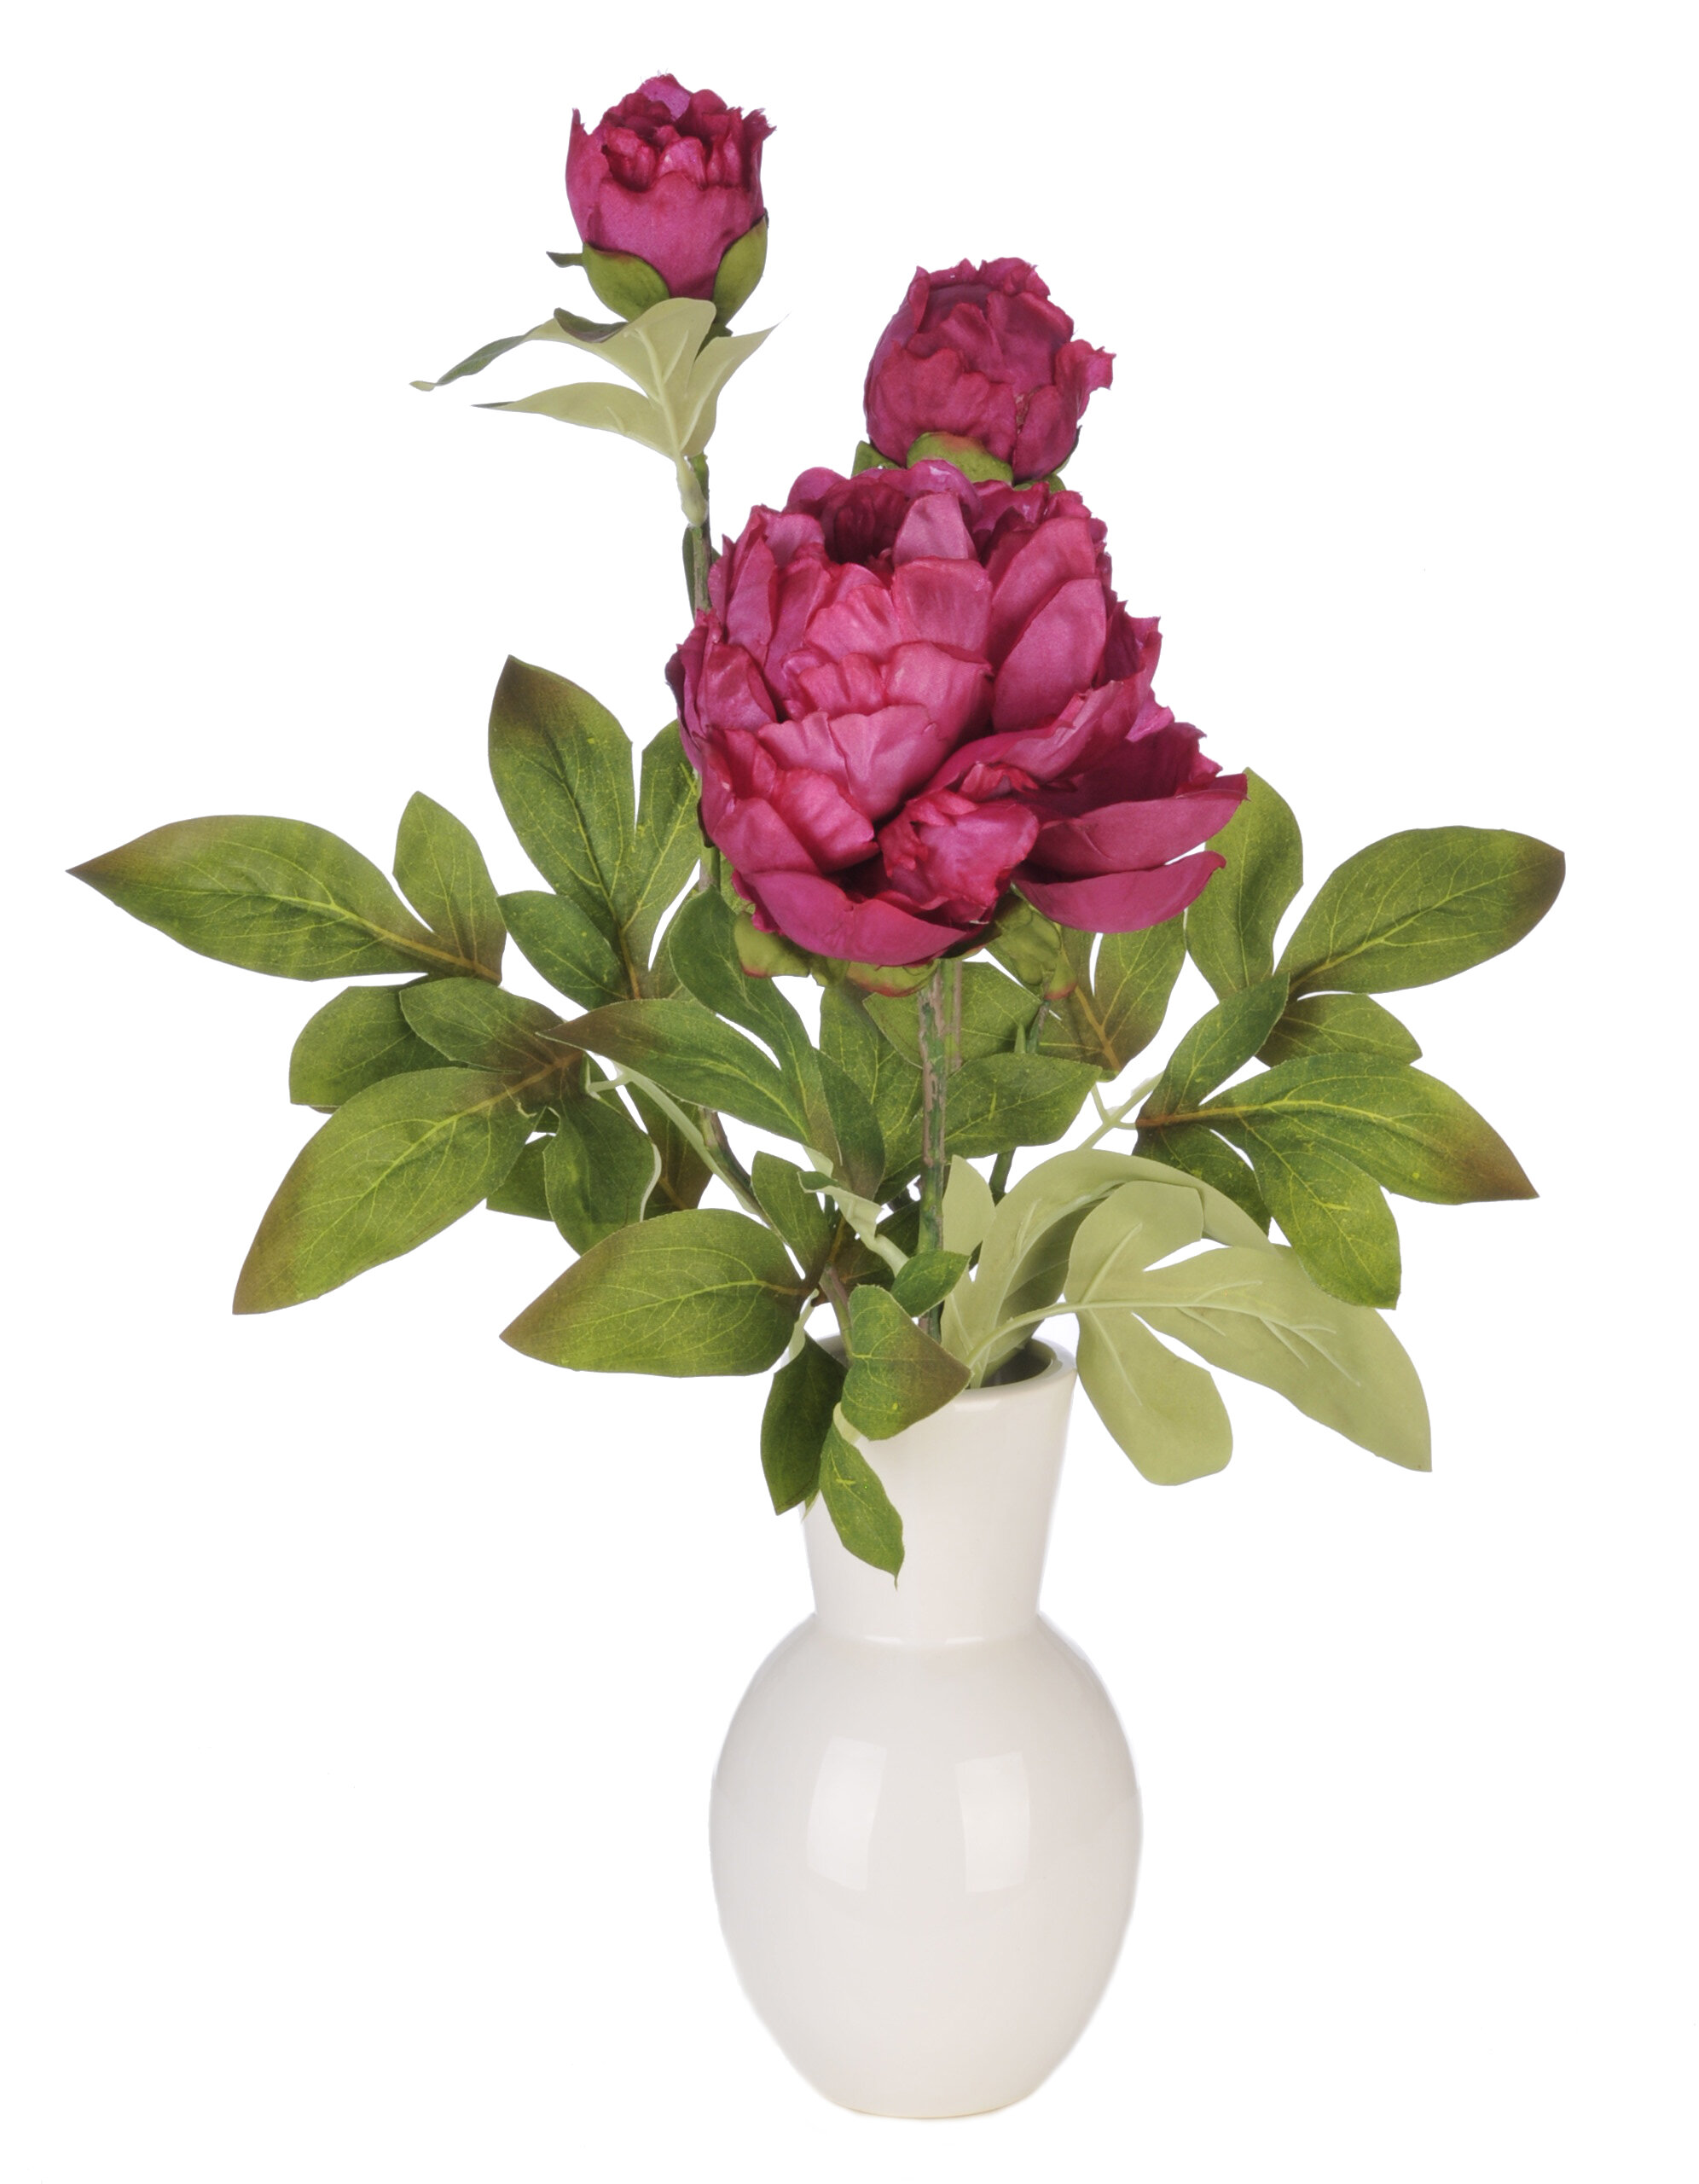 House Of Silk Flowers Artificial Peonies Floral Arrangement In Ceramic Vase Reviews Wayfair